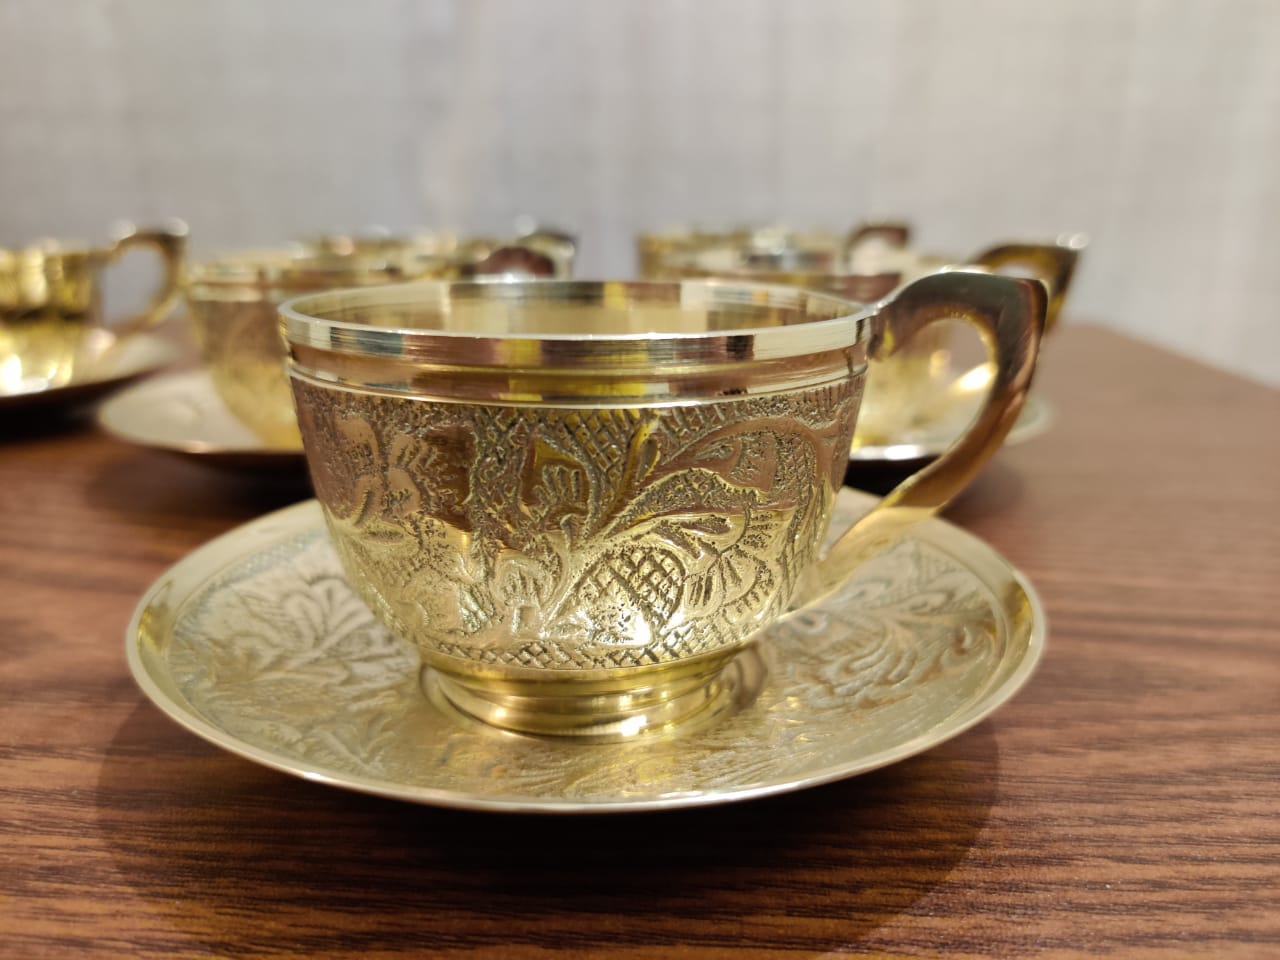 Brass (Pitol) Tea Cup 6 Pcs Set - Beshi Deshi